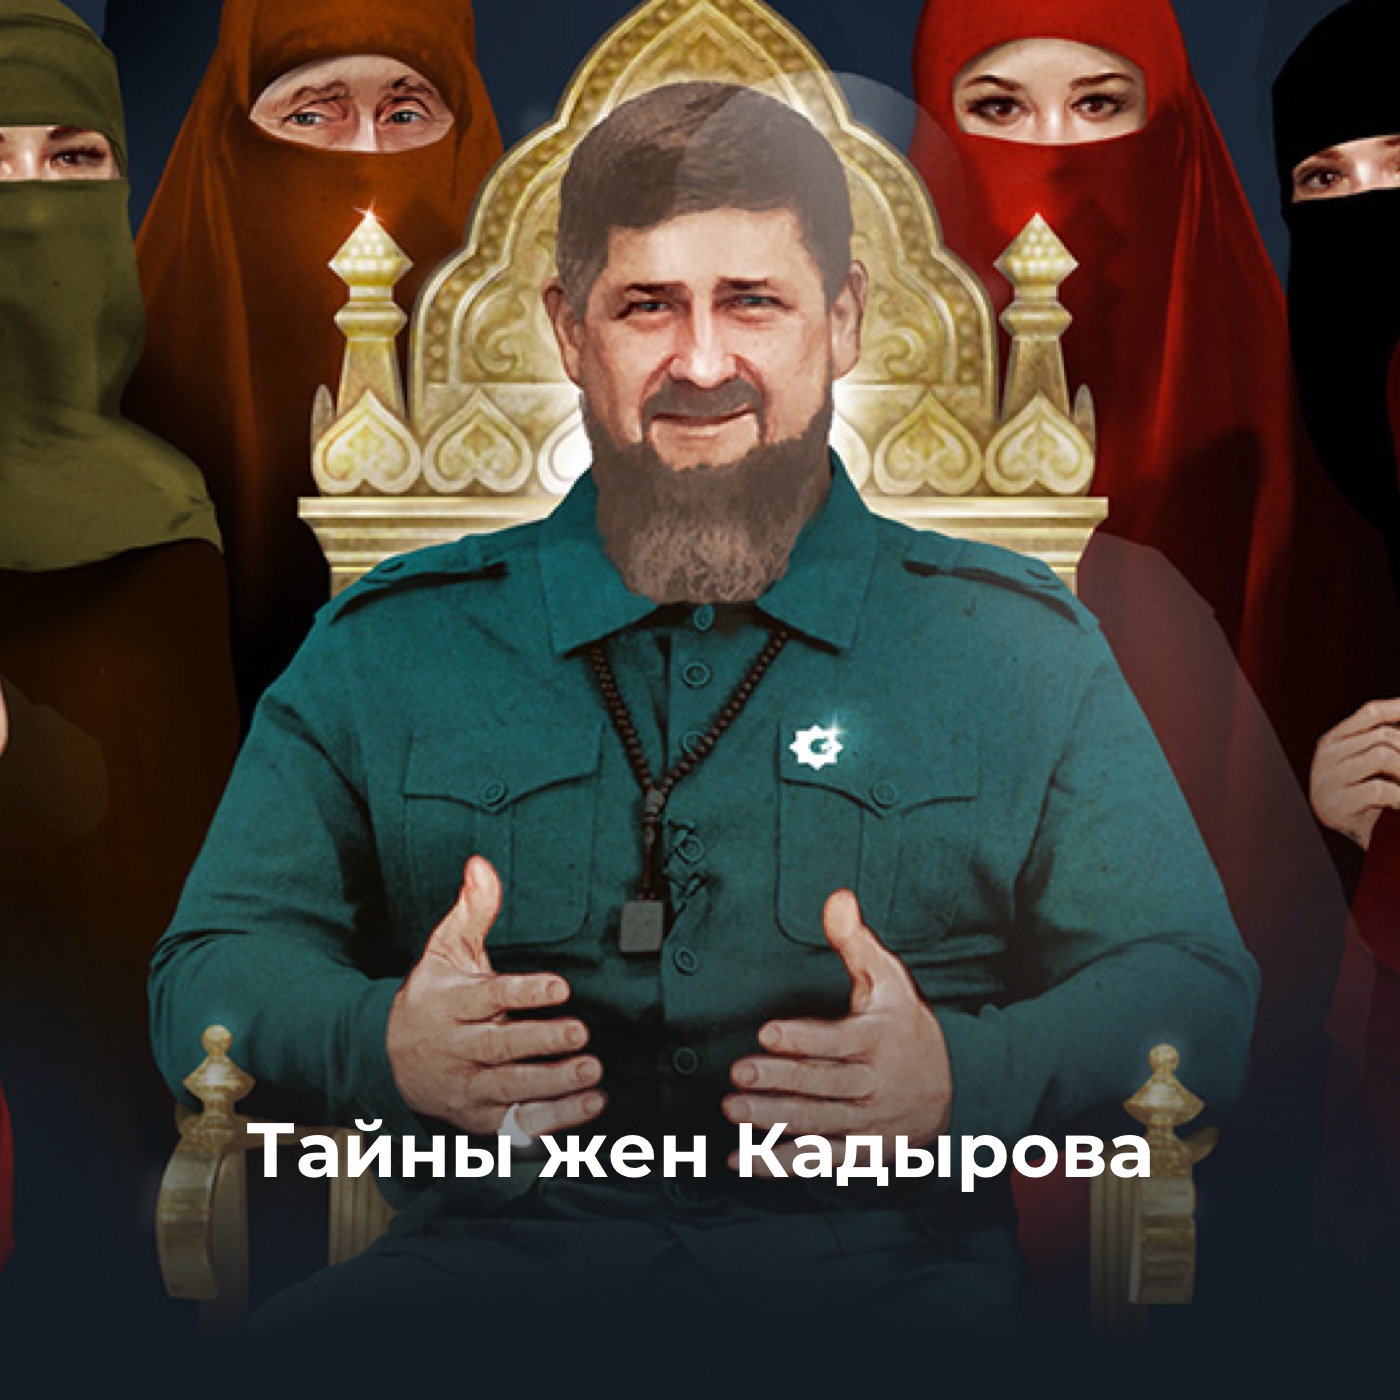 Тайны жен Кадырова. Обсуждаем расследование о главе Чечни с его авторами